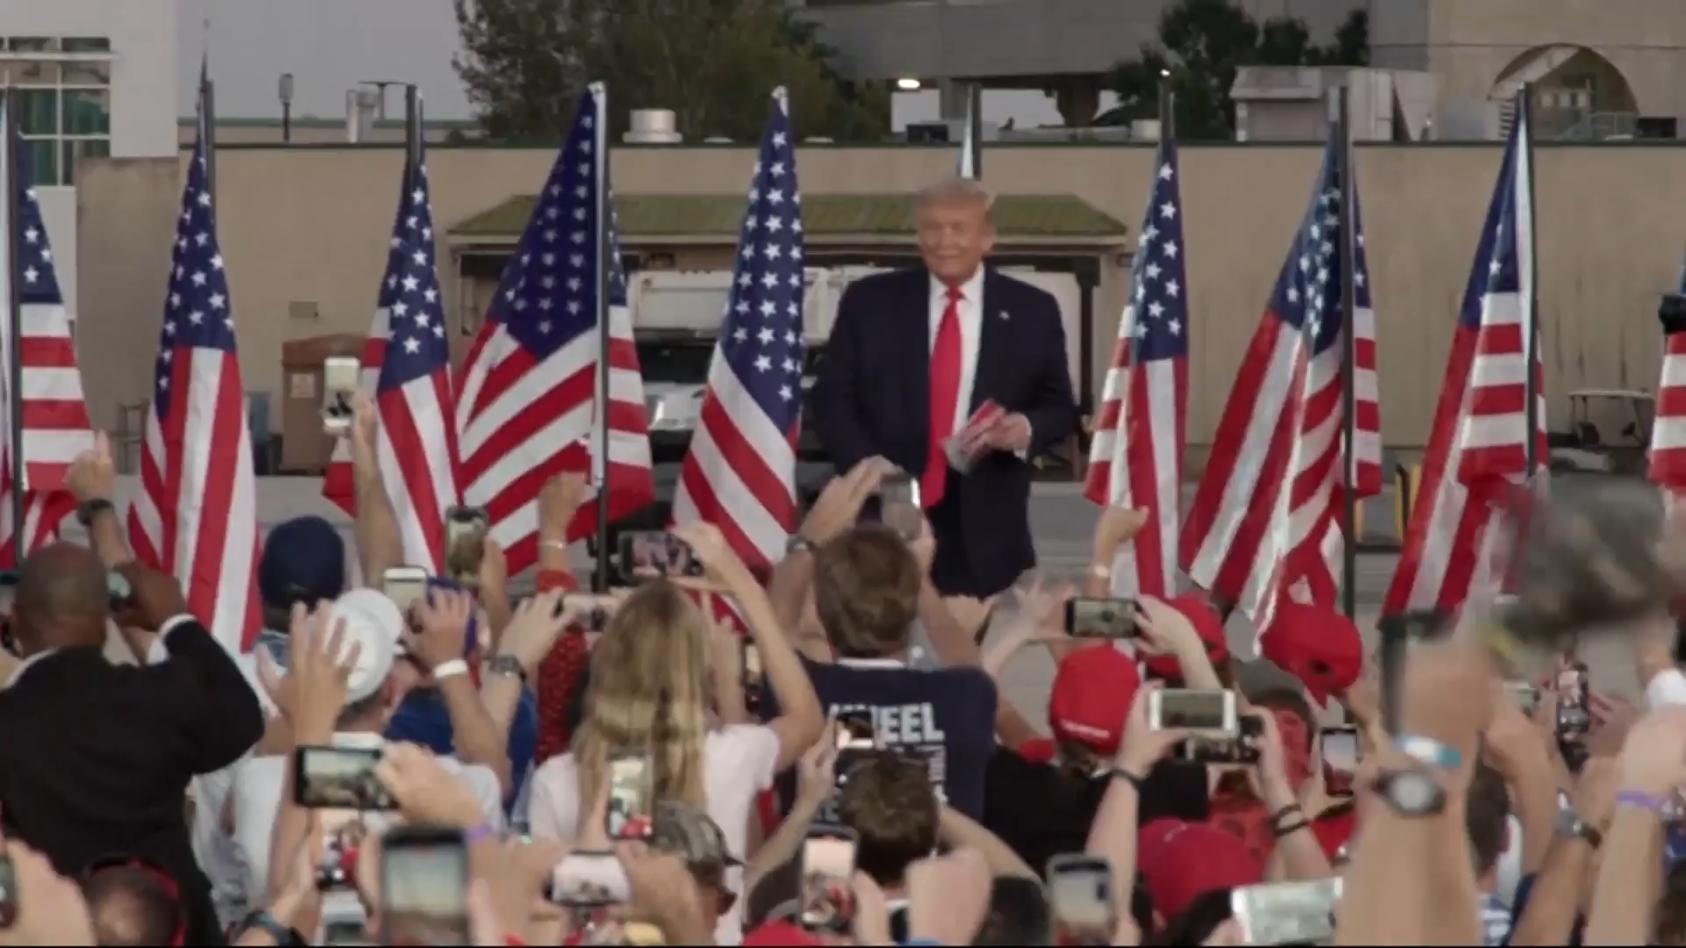 Trump ohne Maske bei Wahlkampf-Auftritt "Werde jeden küssen"